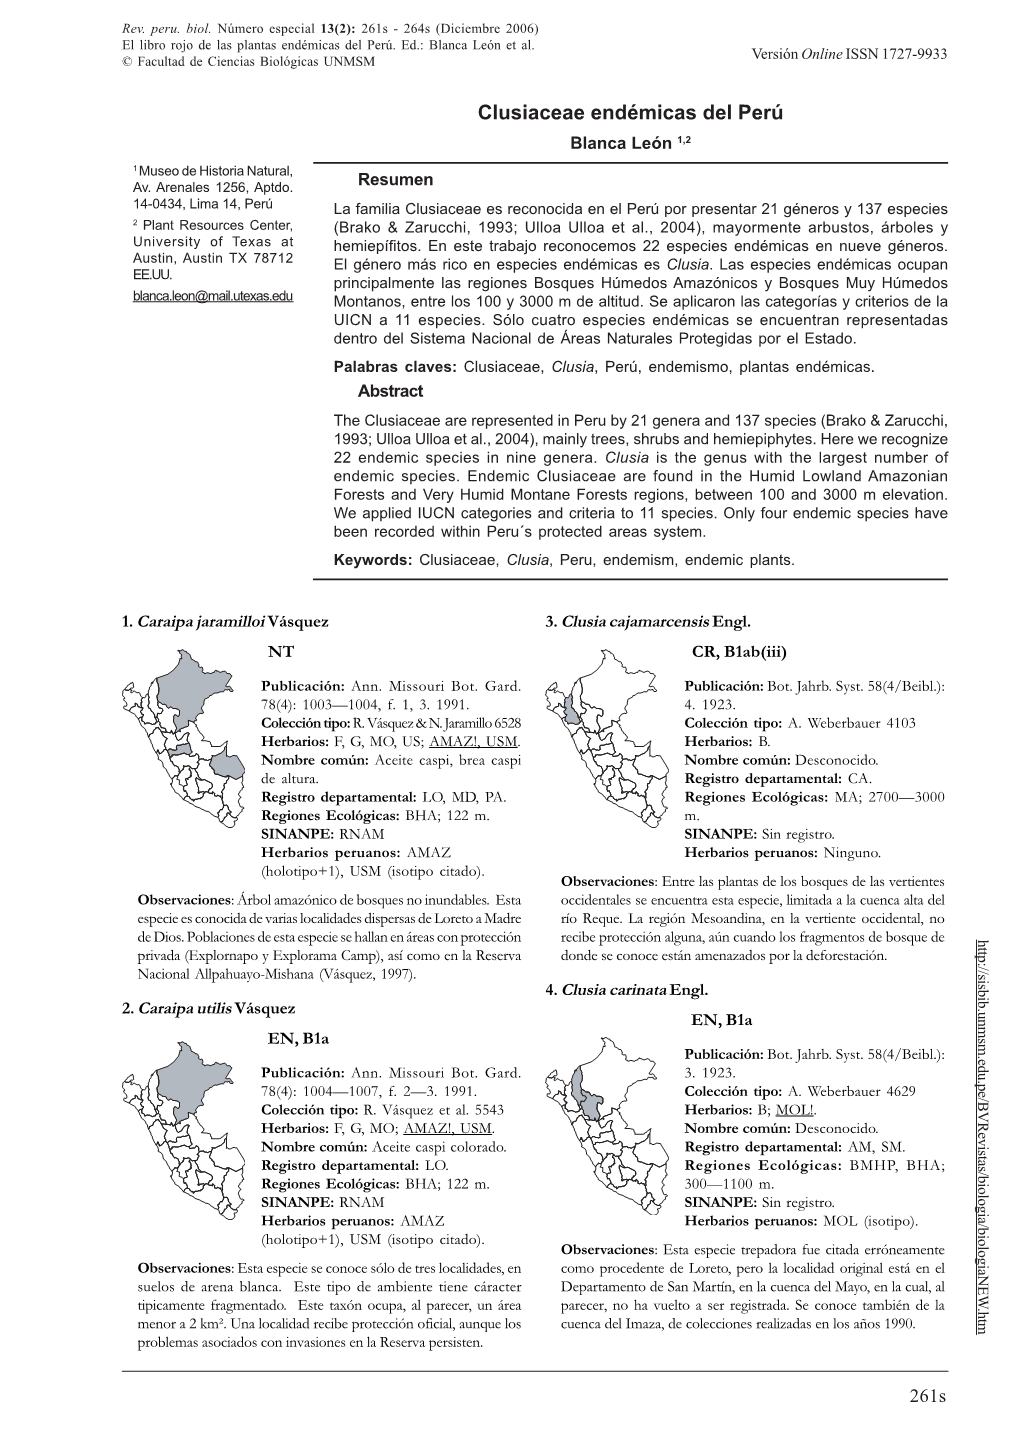 CLUSIACEAE ENDÉMICAS DEL PERÚ © Facultad De Ciencias Biológicas UNMSM Versión Online ISSN 1727-9933